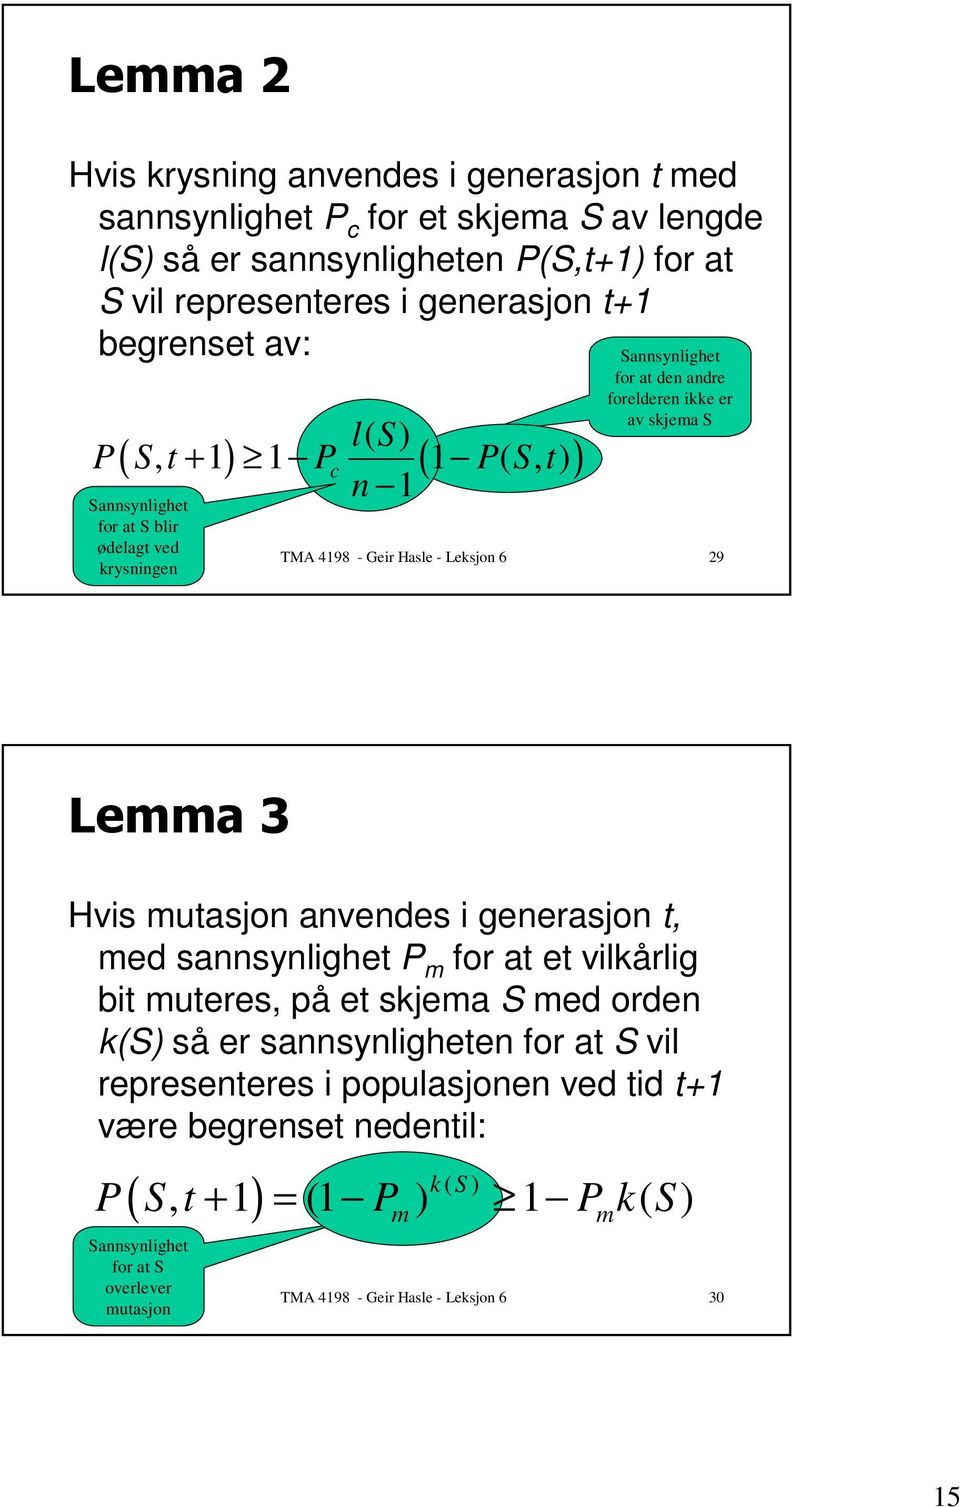 Leksjon 6 29 : Hvis mutasjon anvendes i generasjon t, med sannsynlighet P m for at et vilkårlig bit muteres, på et skjema S med orden k(s) så er sannsynligheten for at S vil